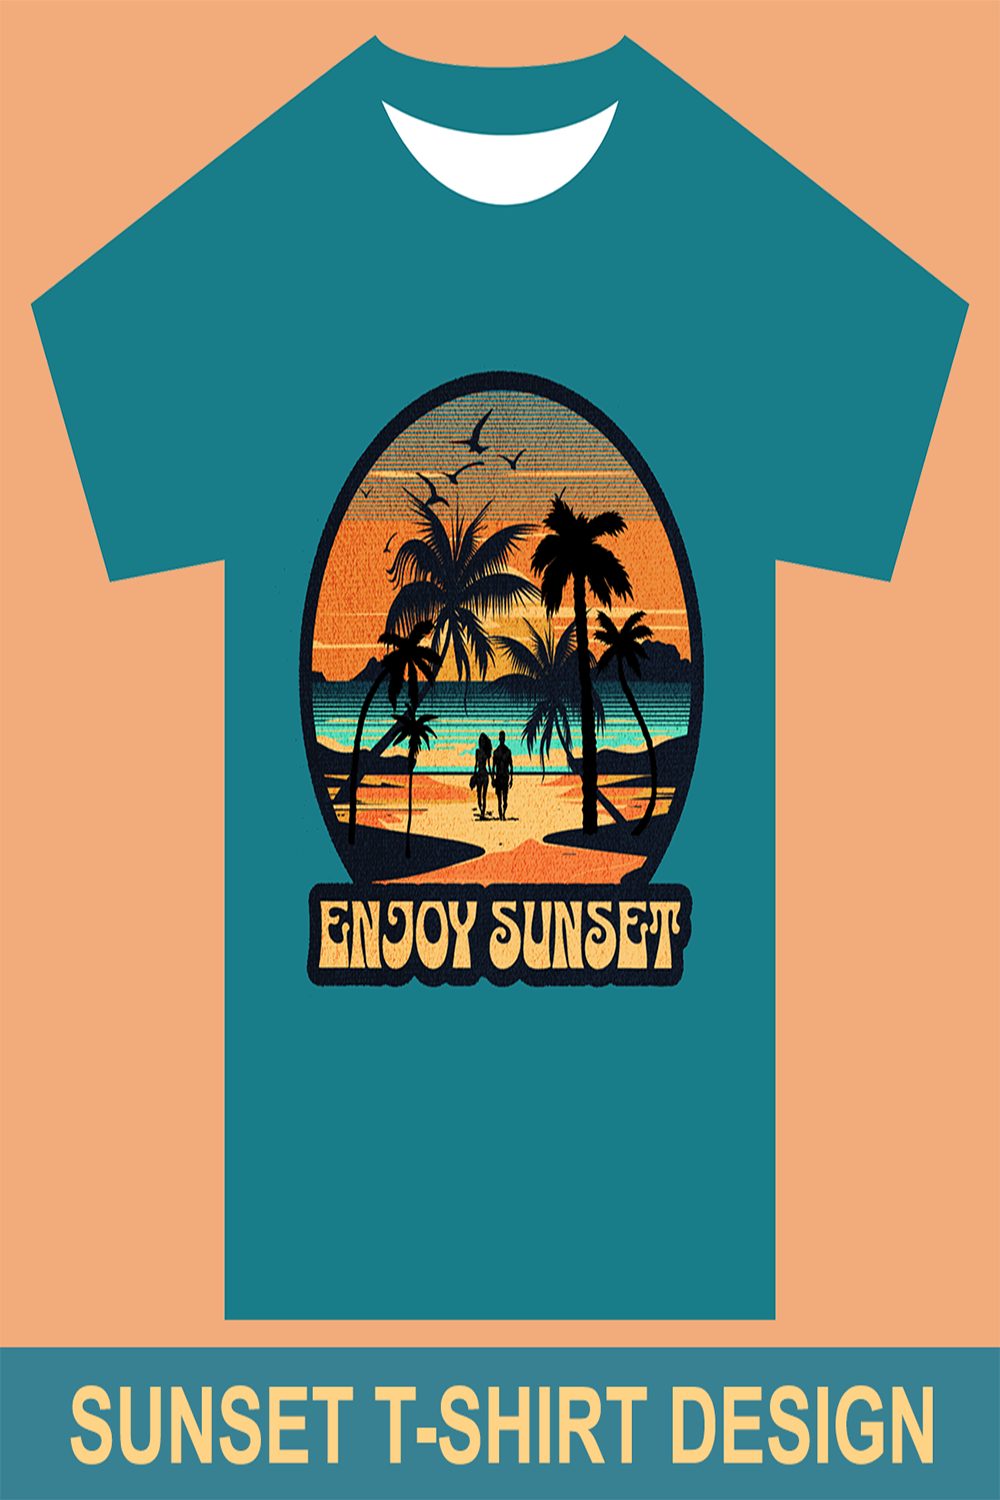 Sunset beach T-shirt pinterest preview image.